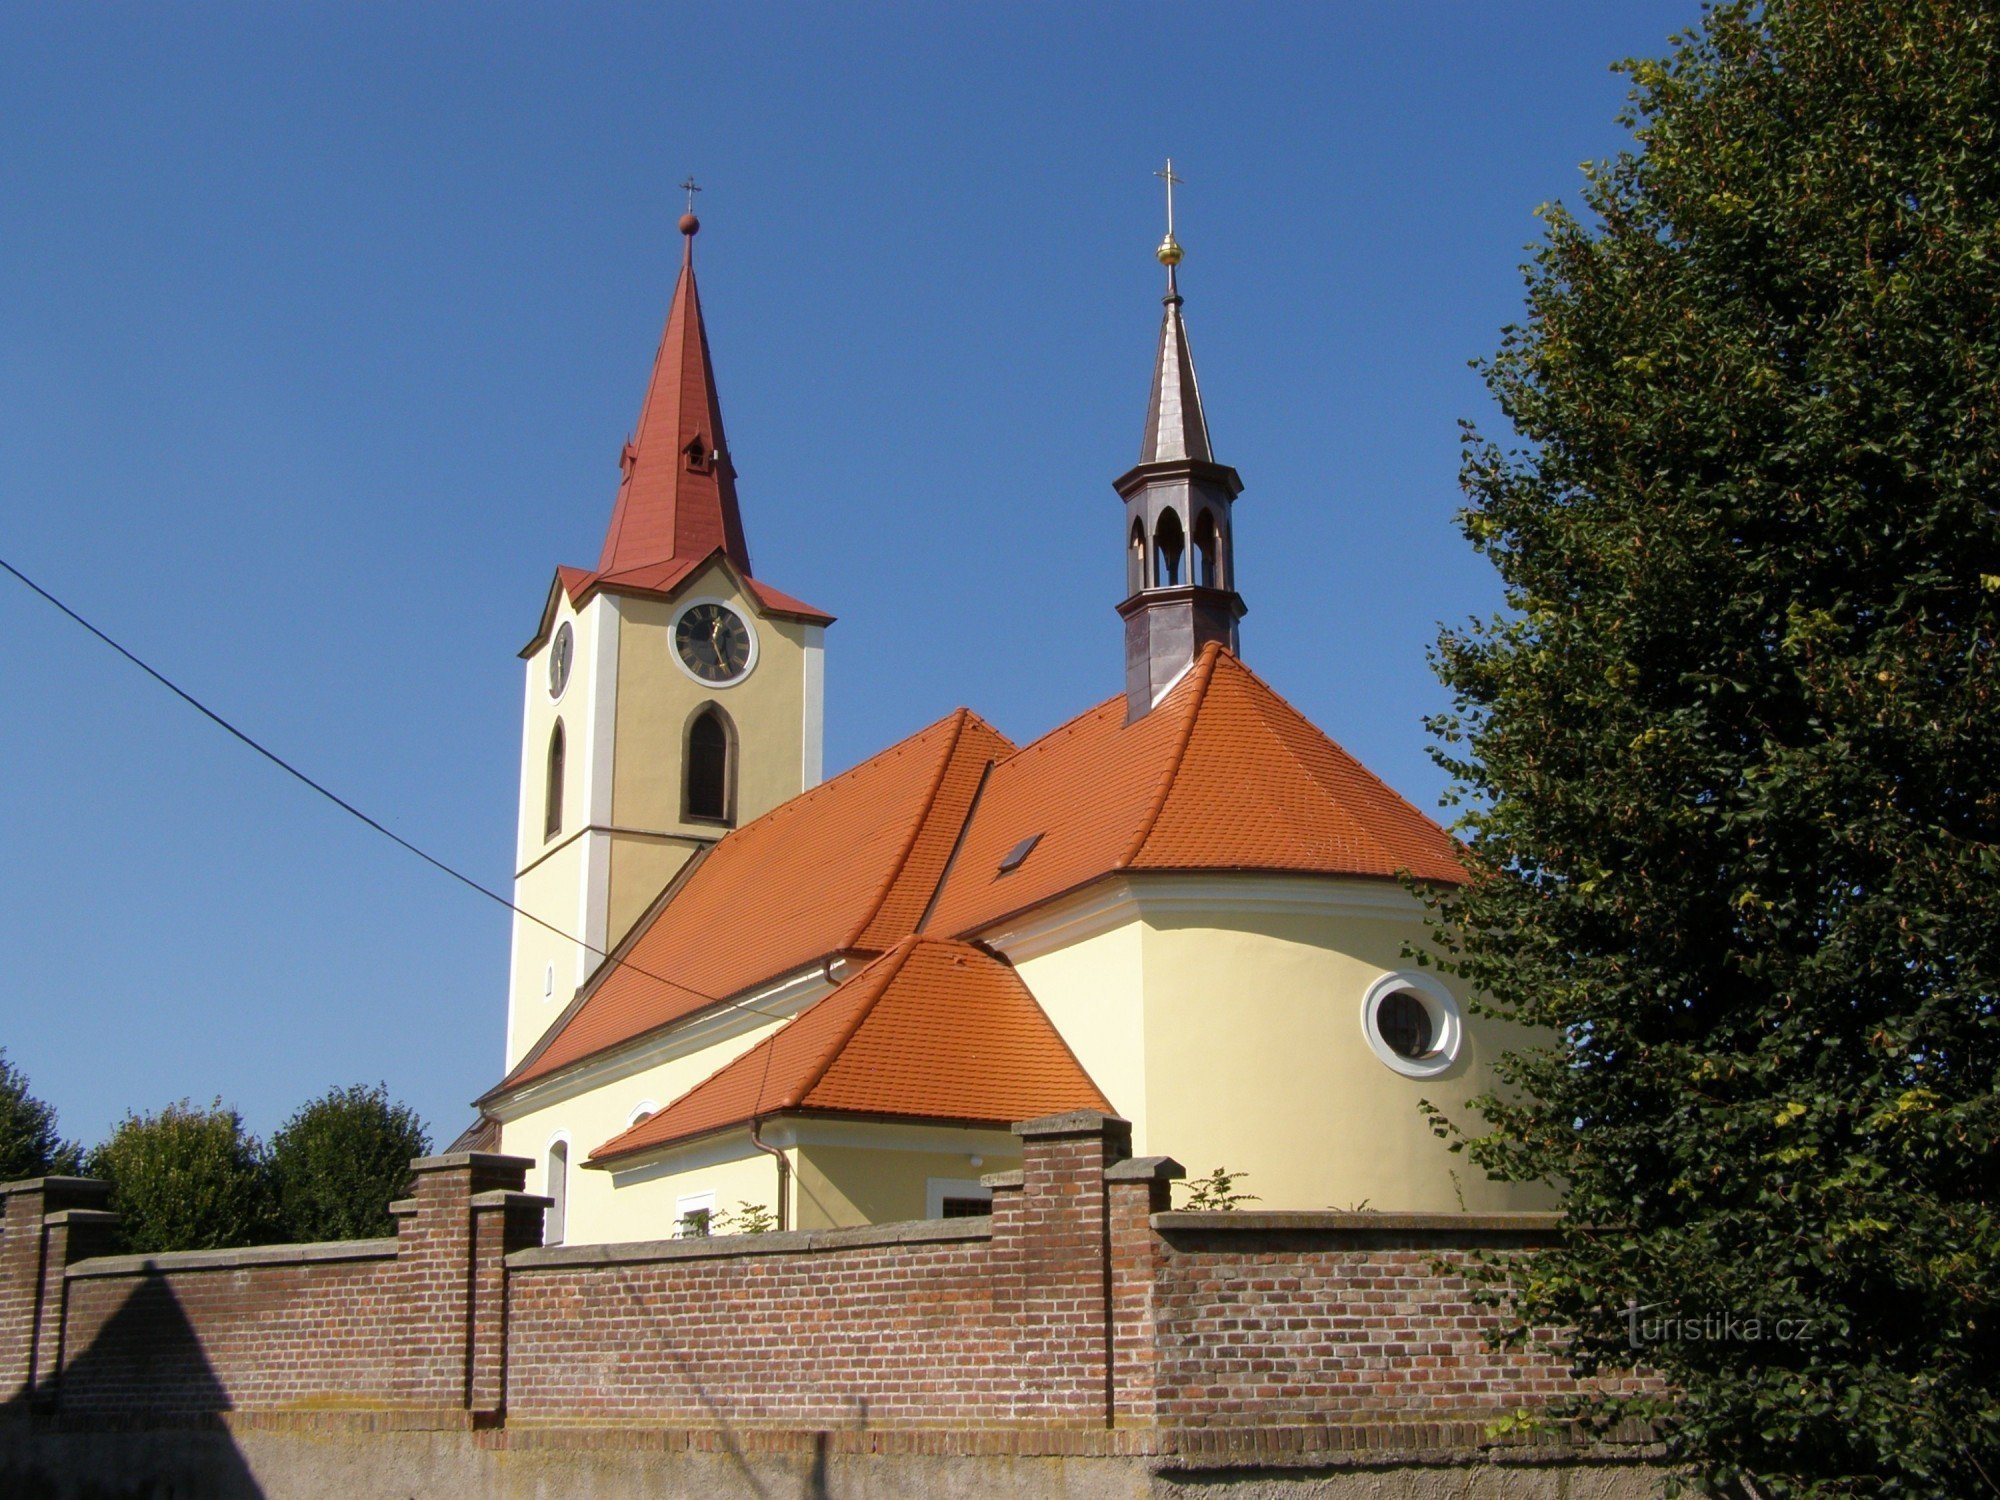 Ясенна - церковь св. Джордж